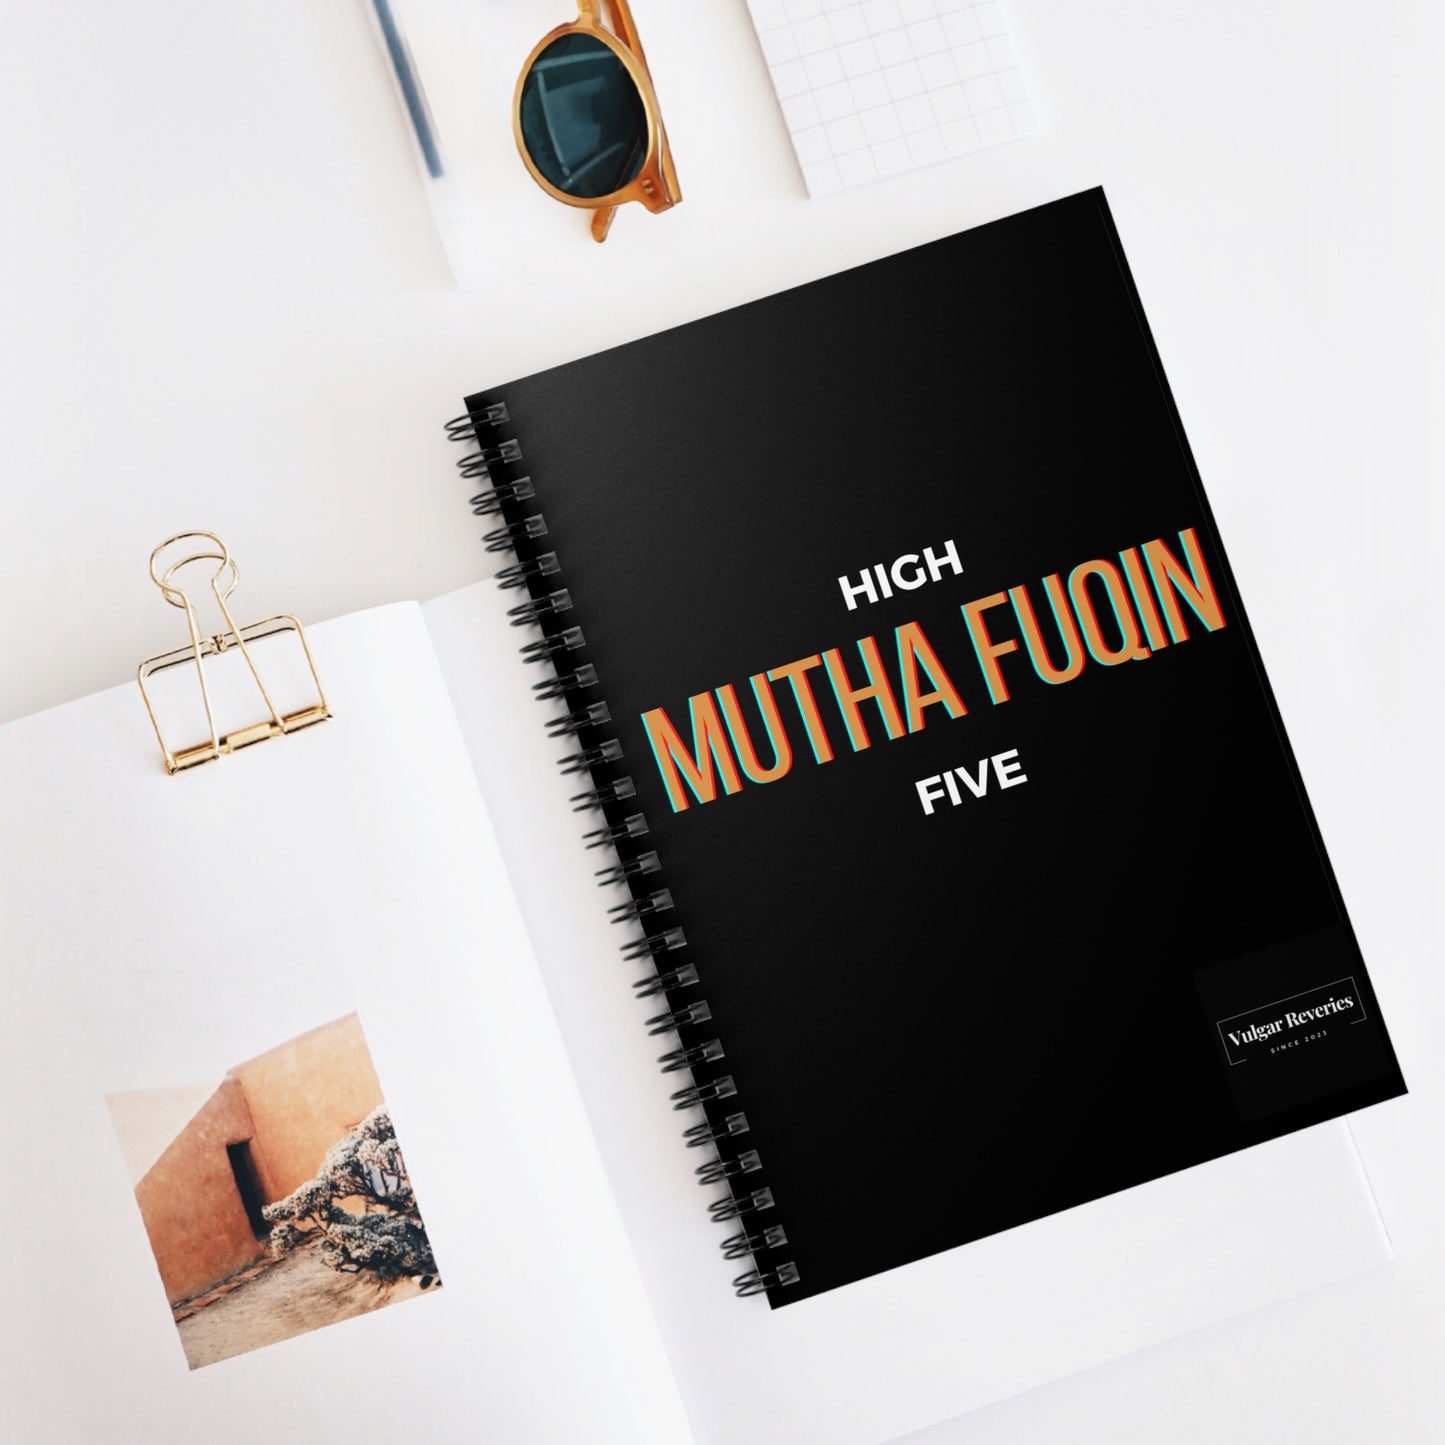 High Mutha Fuqin Five - Spiral Notebook - Ruled Line